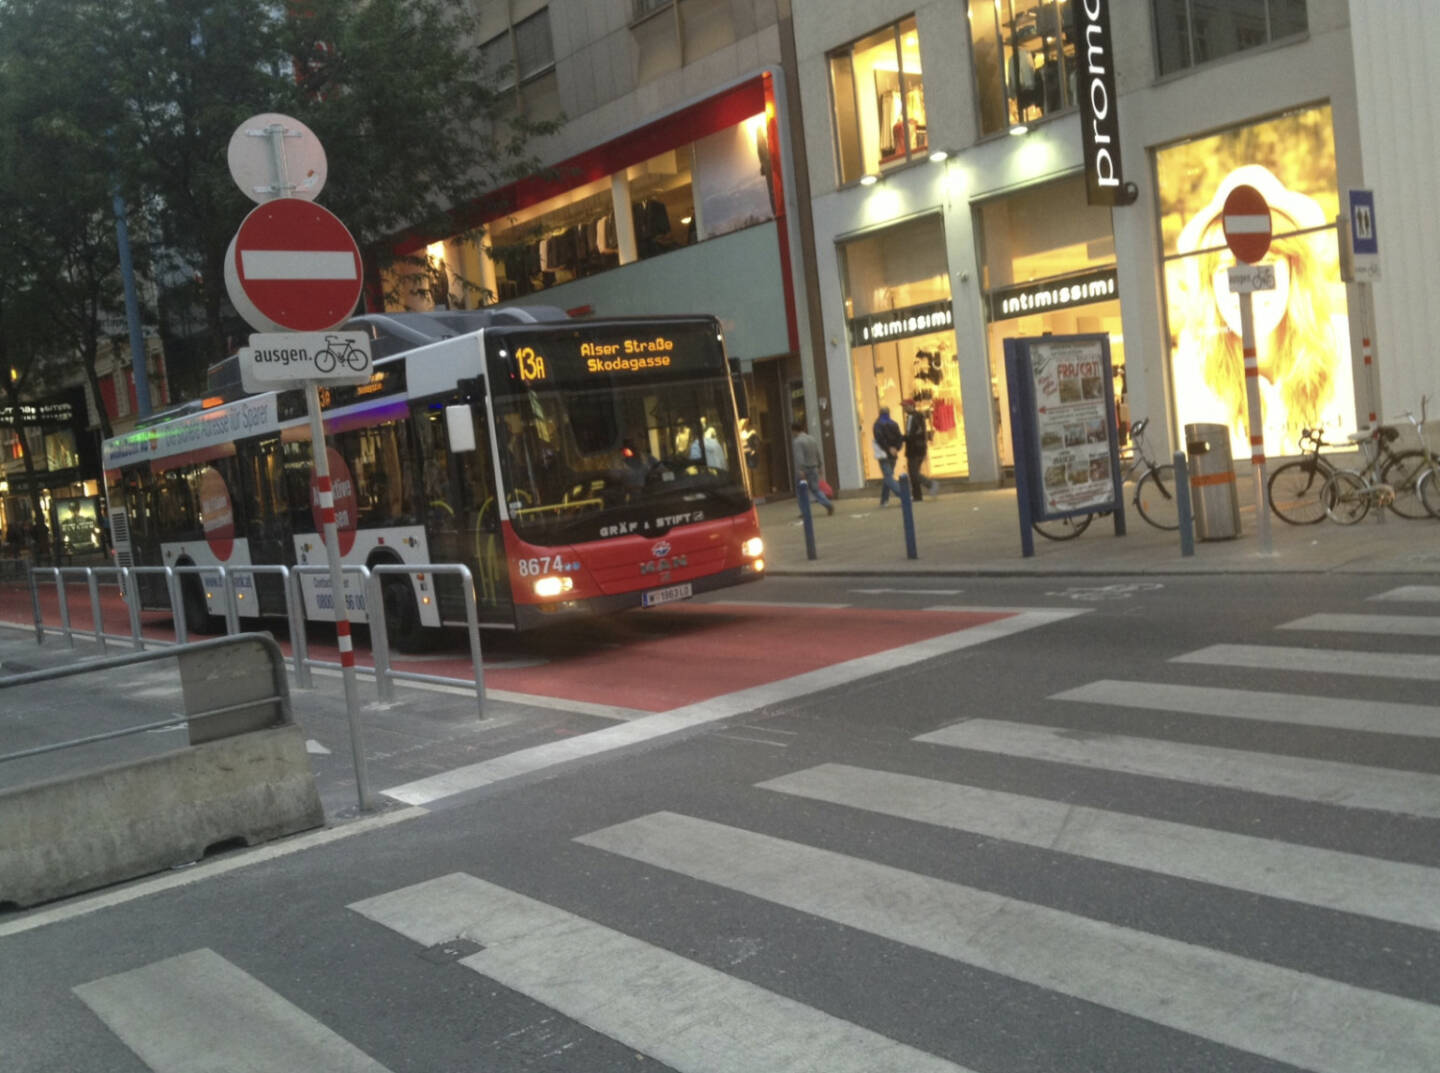 ... war nur der 13a, die aktuell vielleicht berühmteste Linie Österreichs (unterwegs auf der Busspur in der Begnungszone ohne Begegnung auf der Mariahilferstrasse)